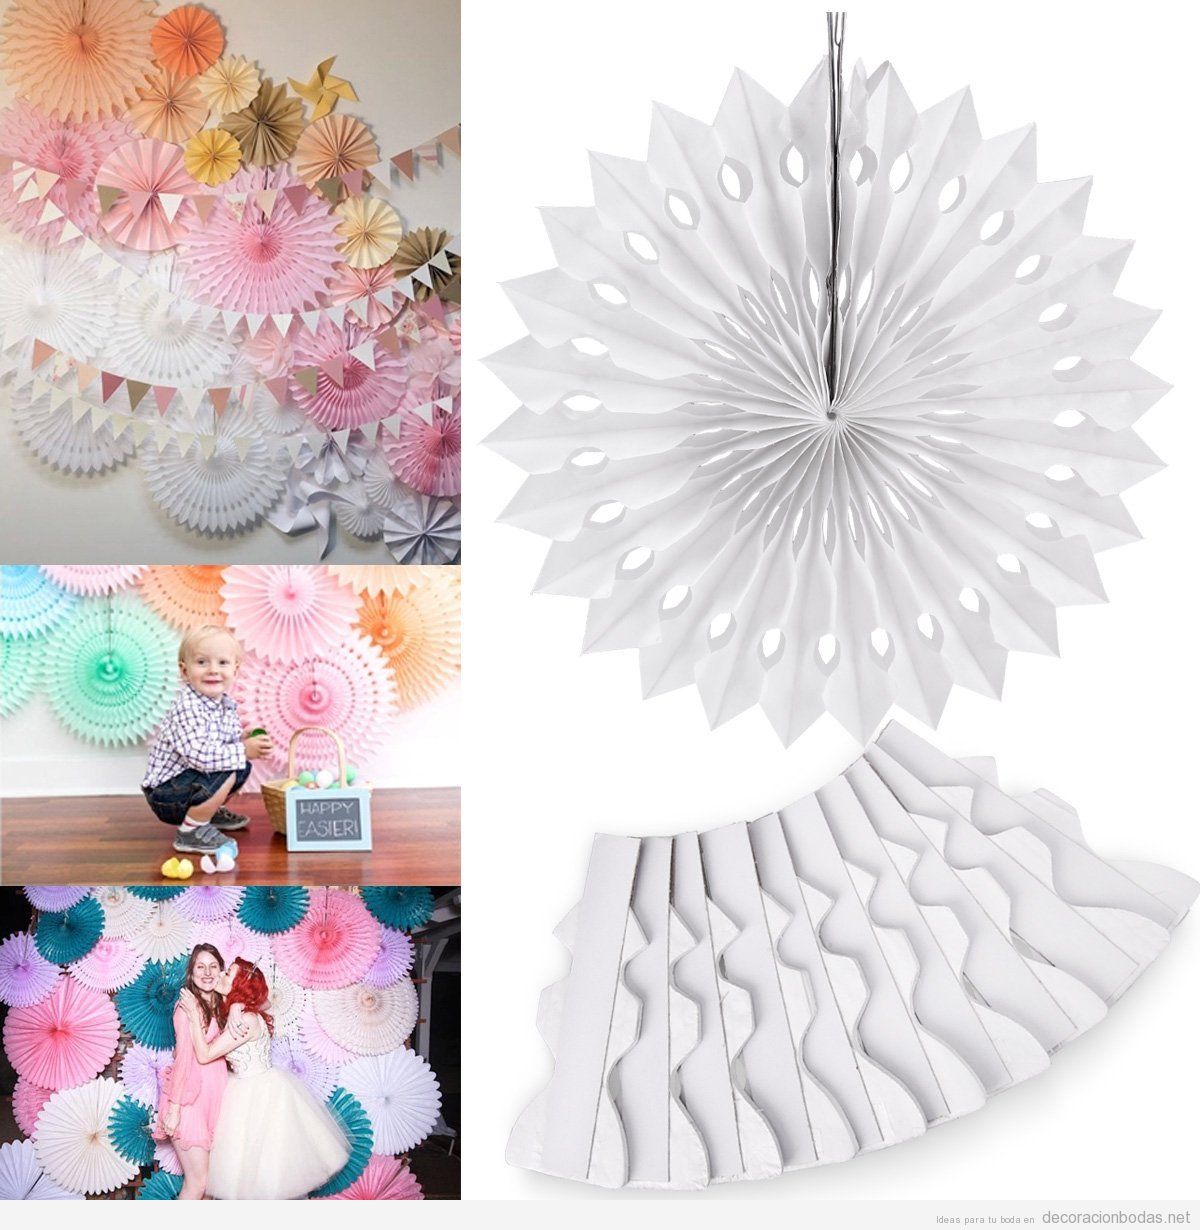 Inferior visual Sinewi Abanicos de papel para decorar boda, set de 10 piezas por 7,99€ •  Decoración bodas